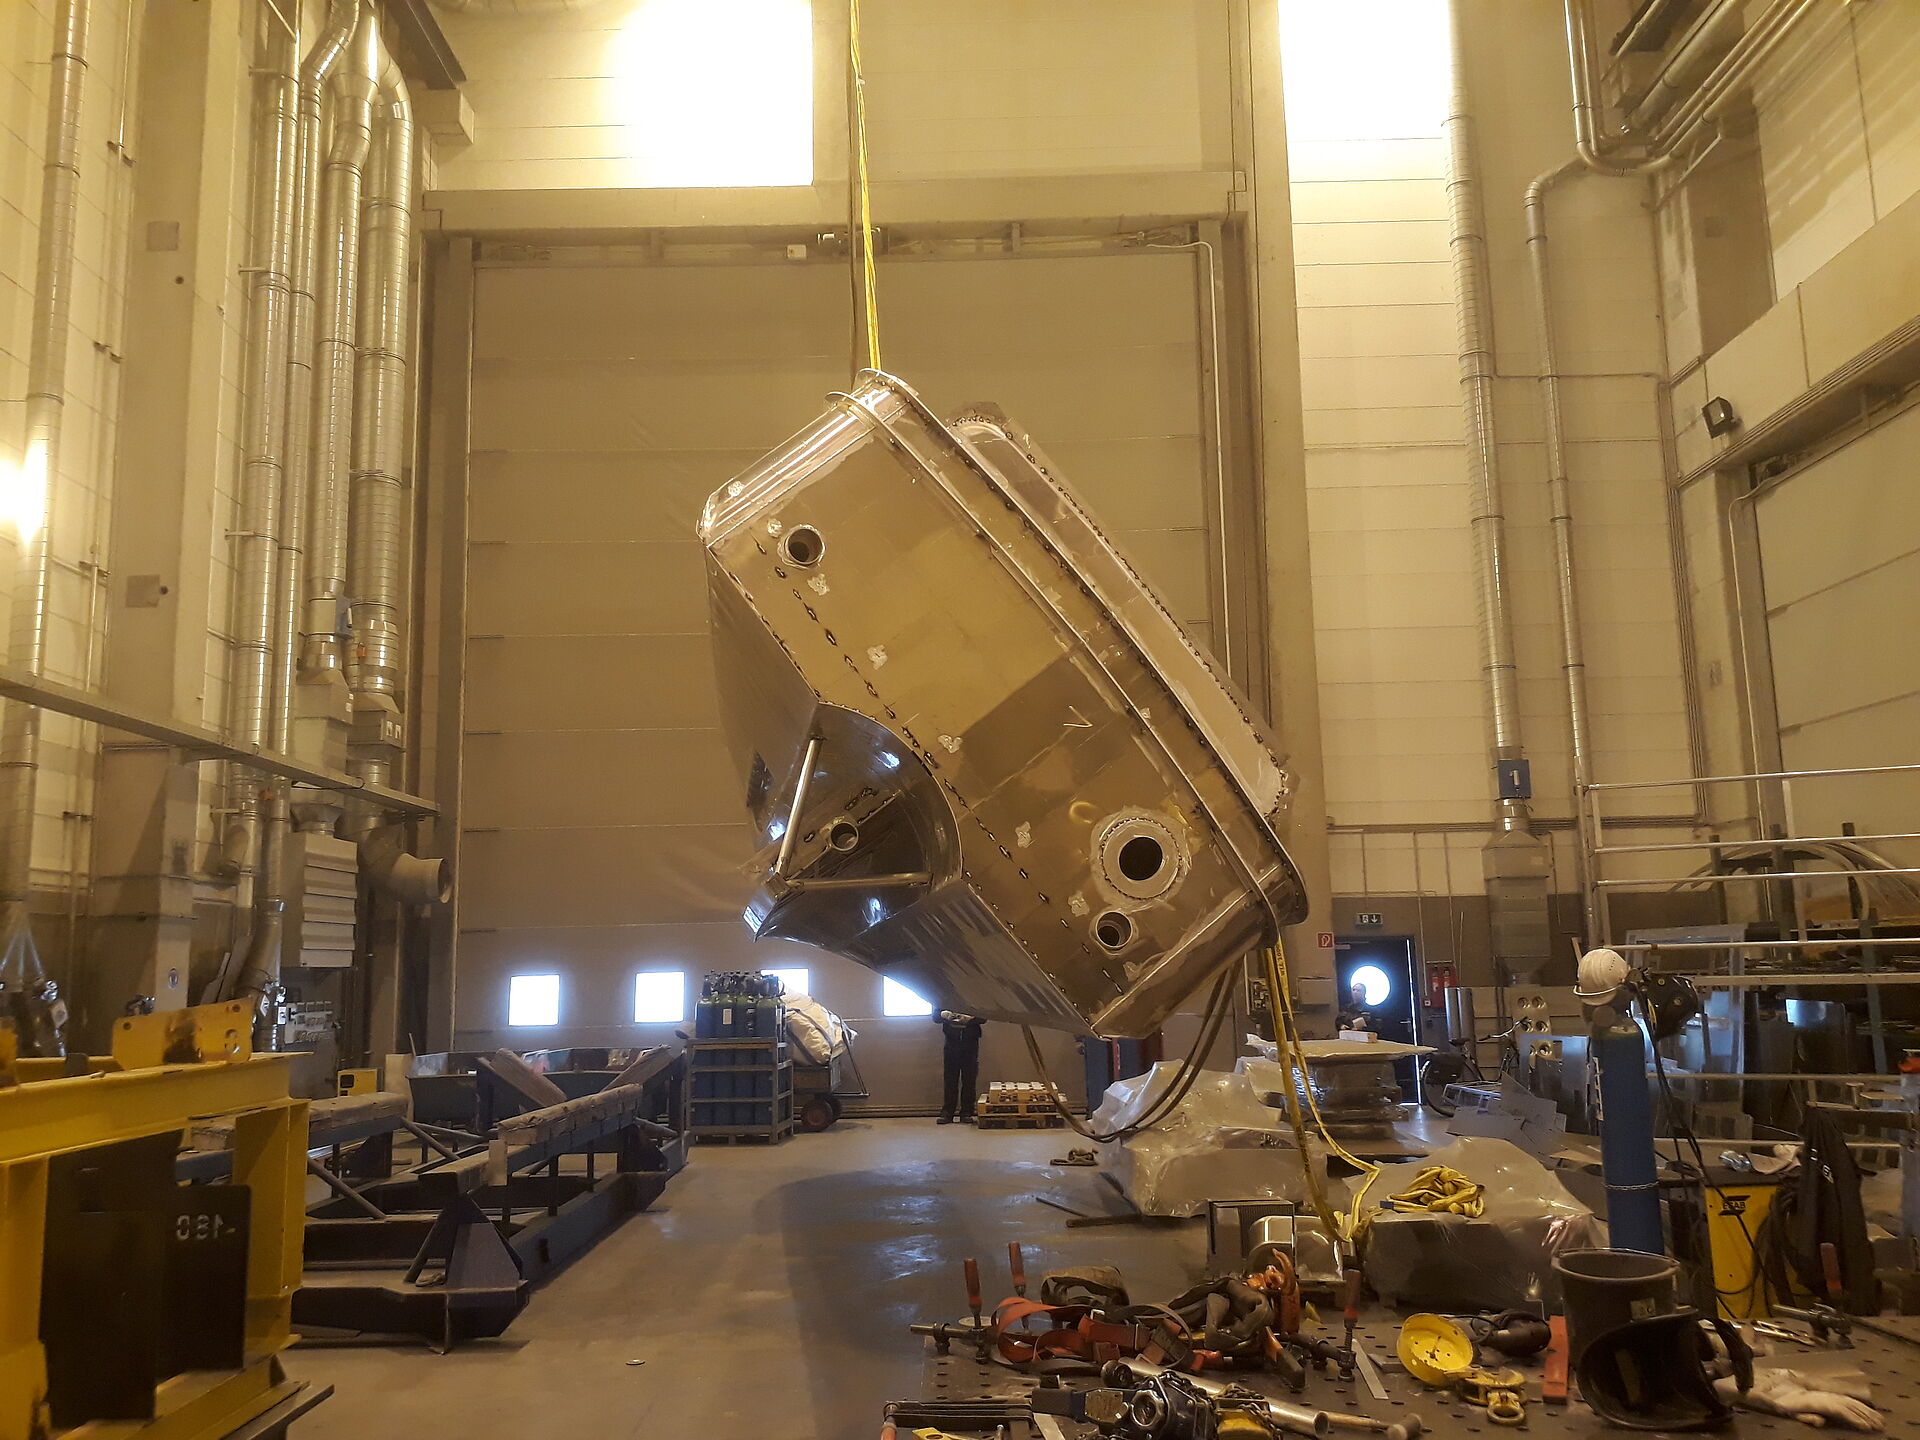 Der Rohbau aus Aluminium eines Seenotrettungsbootes wird in einer Werfthalle von einem Hallenkran um die Längsachse gedreht. Ansicht von hinten.